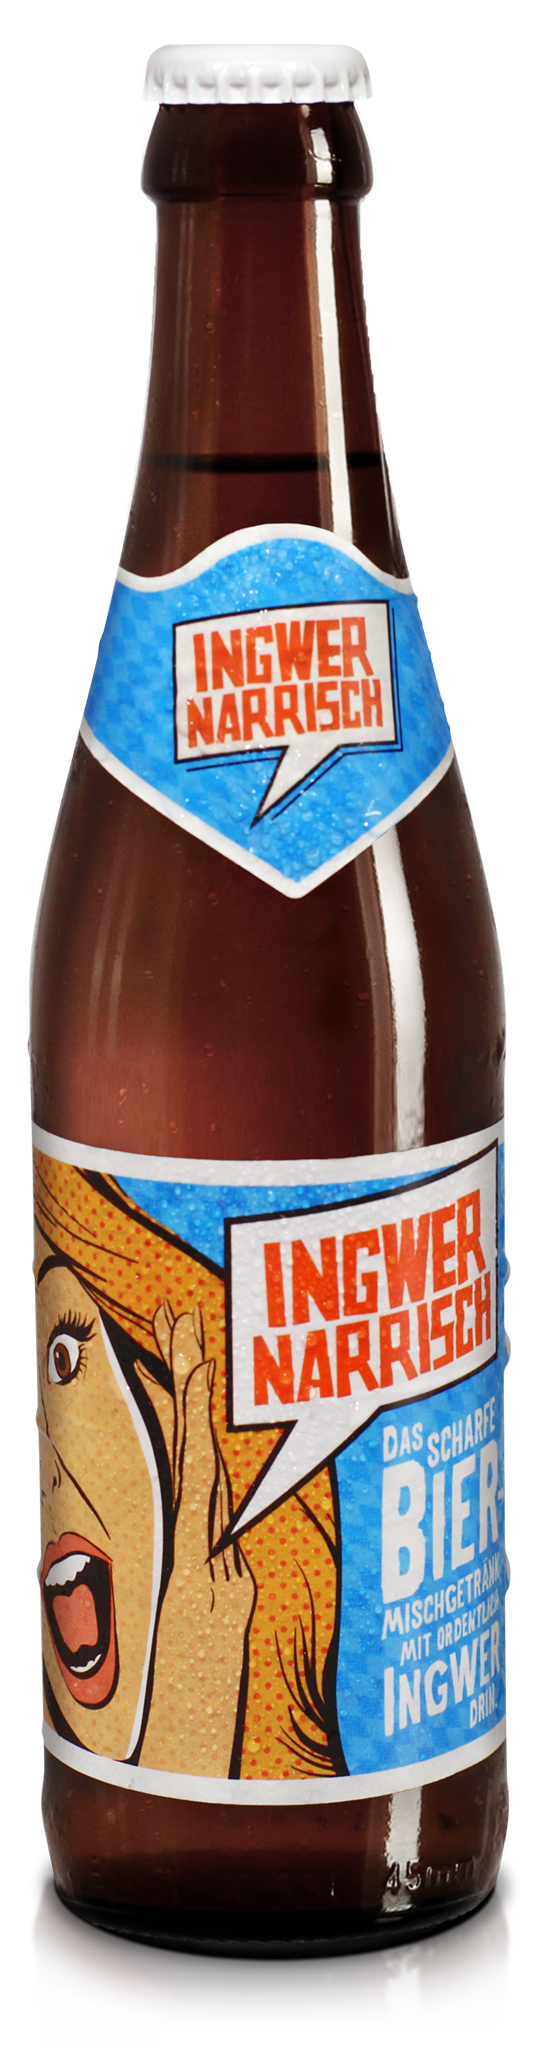 INGWER NARRISCH - Bier mit Ingwer inkl. 0,08€ Pfand